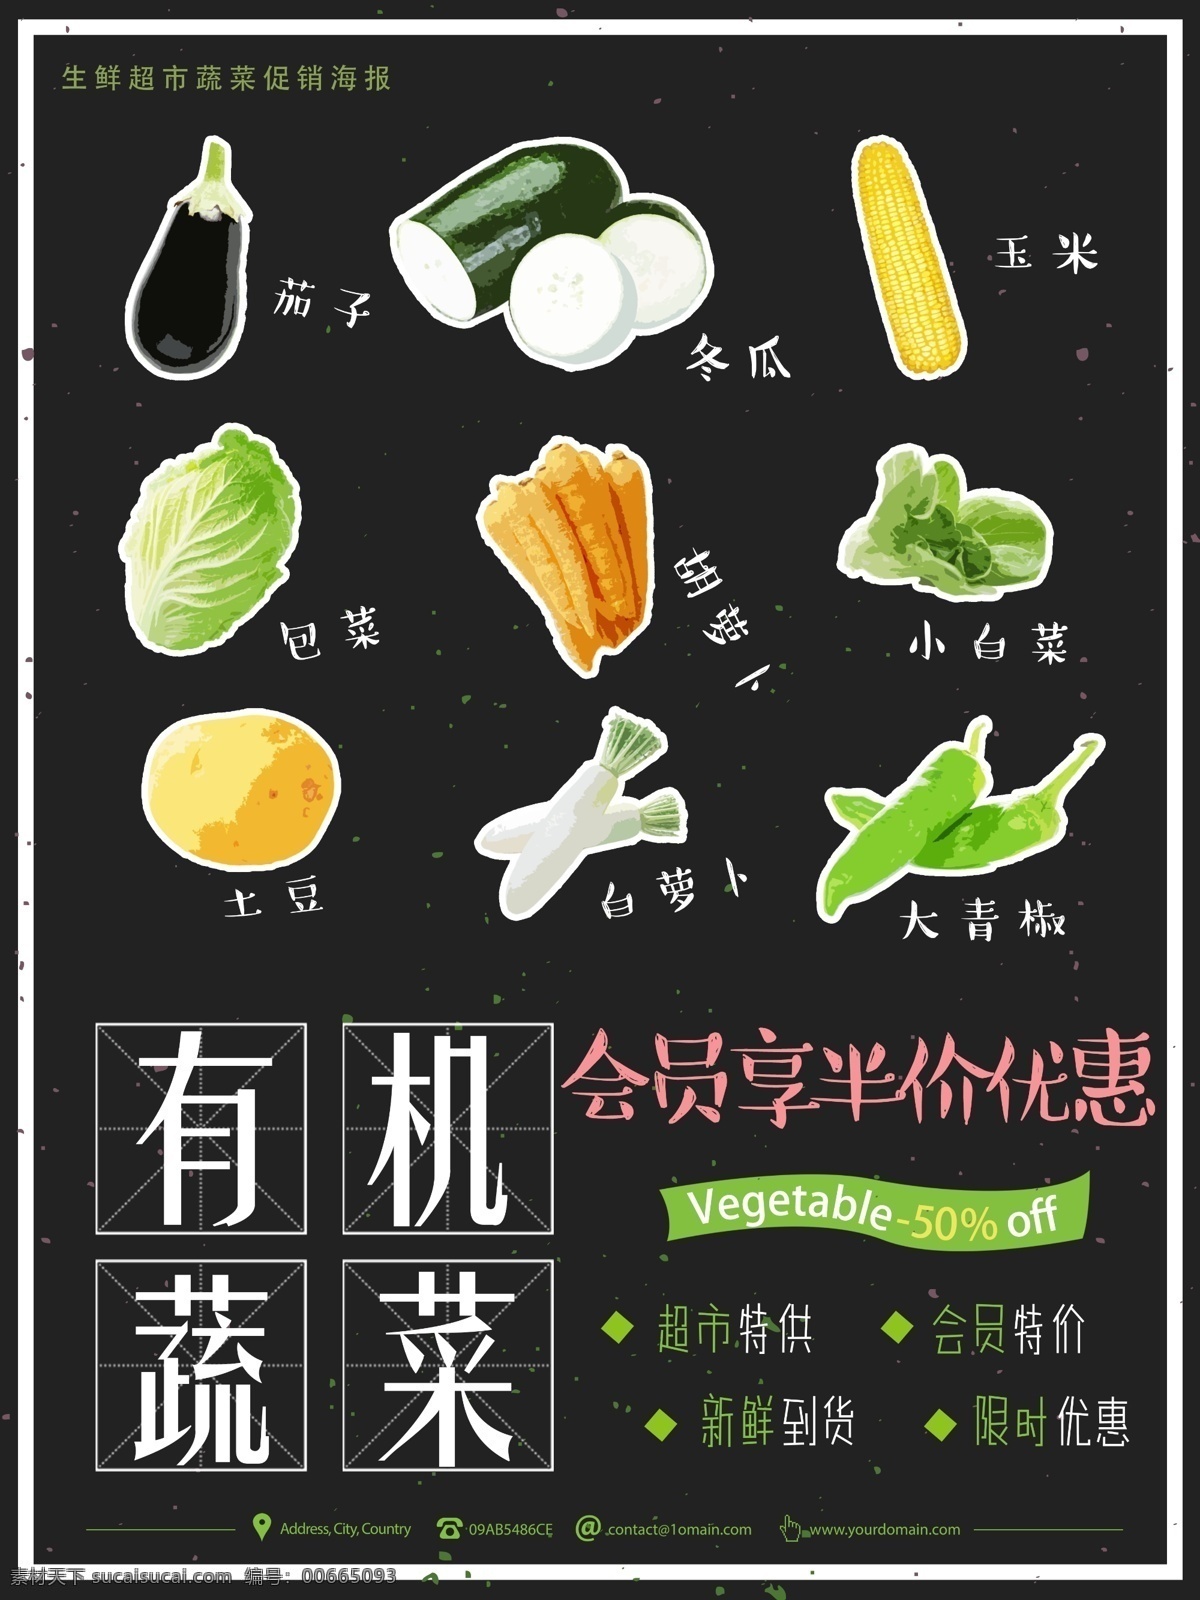 黑色 涂鸦 有机 蔬菜水果 绿色食品 超市 促销 海报 黑色卡通 创意 简约 限时特惠 新鲜 果蔬 蔬菜 水果 生鲜 绿色健康 环保 有机蔬菜 无公害